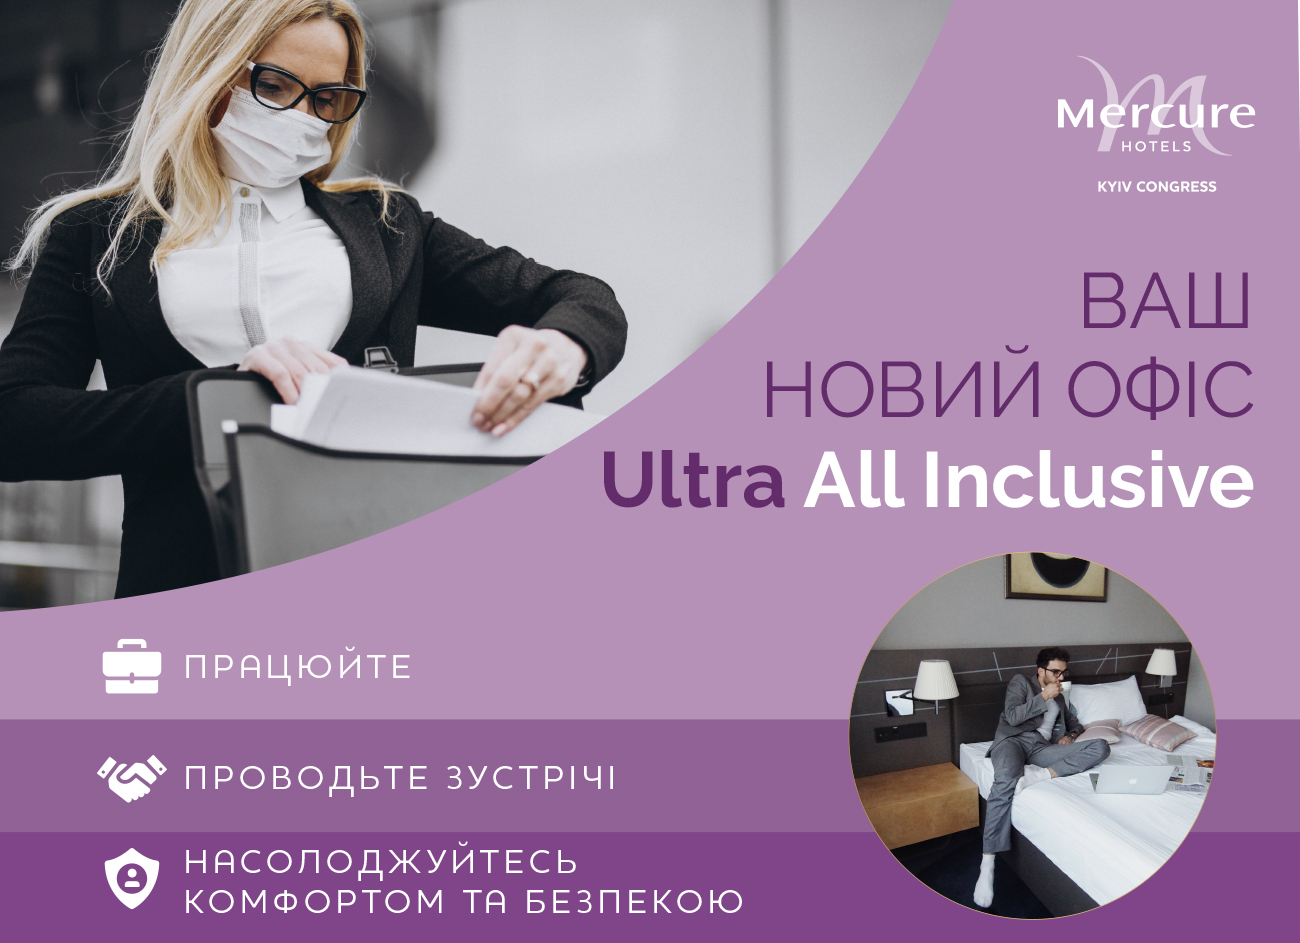 Ваш новий офіс Ultra All Inclusive - у Mercure Kyiv Congress!